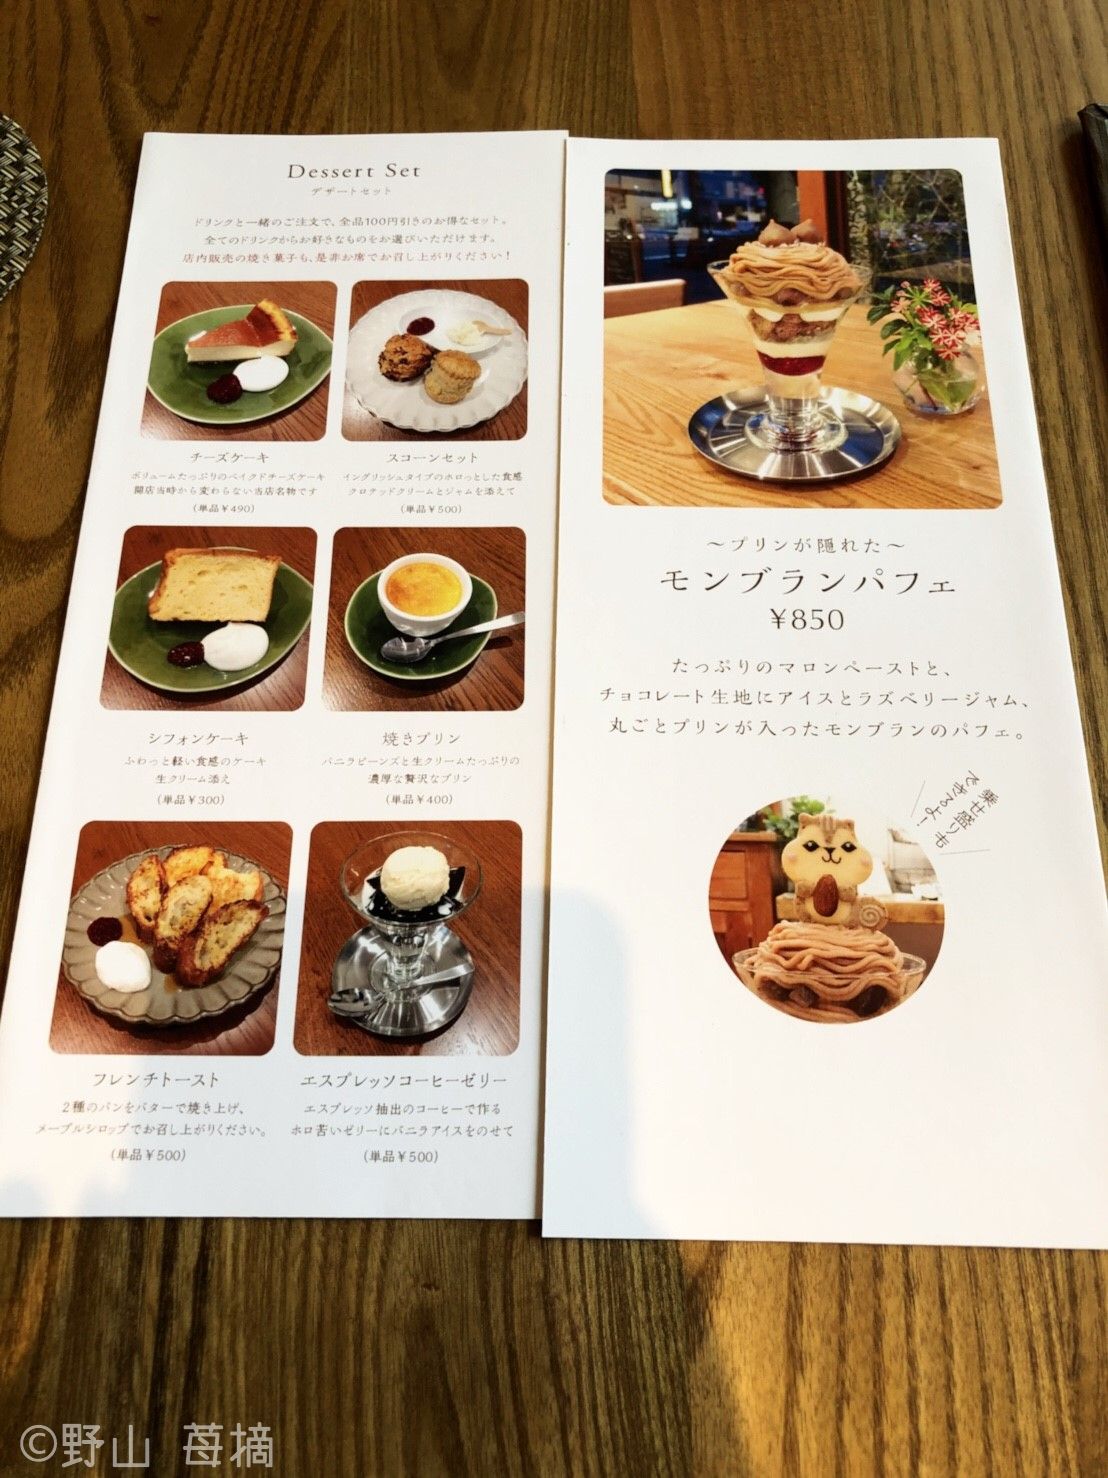 動物クッキーのせパフェが可愛すぎ 目黒区 Henteco森の洋菓子店 東京都 Lineトラベルjp 旅行ガイド